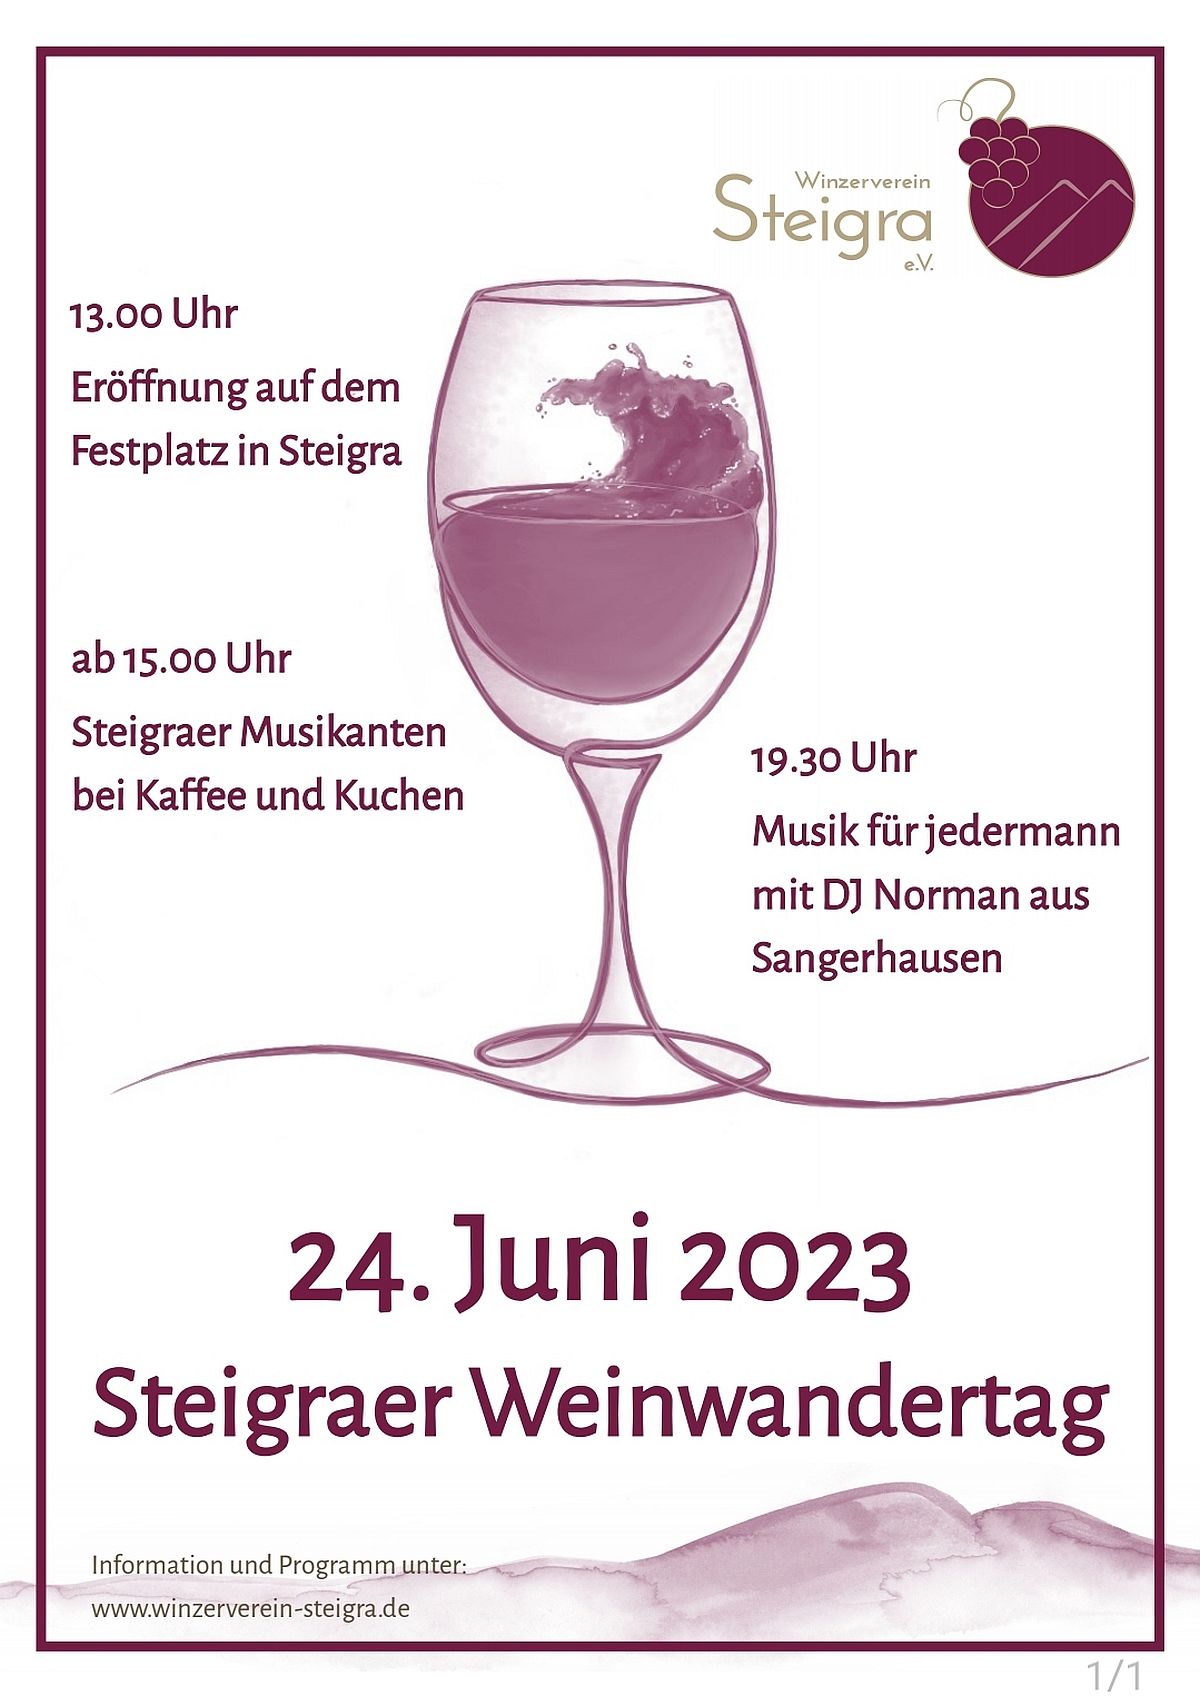 Die Weinwanderung in Steigra am 25. Juni 2022 - und zurck